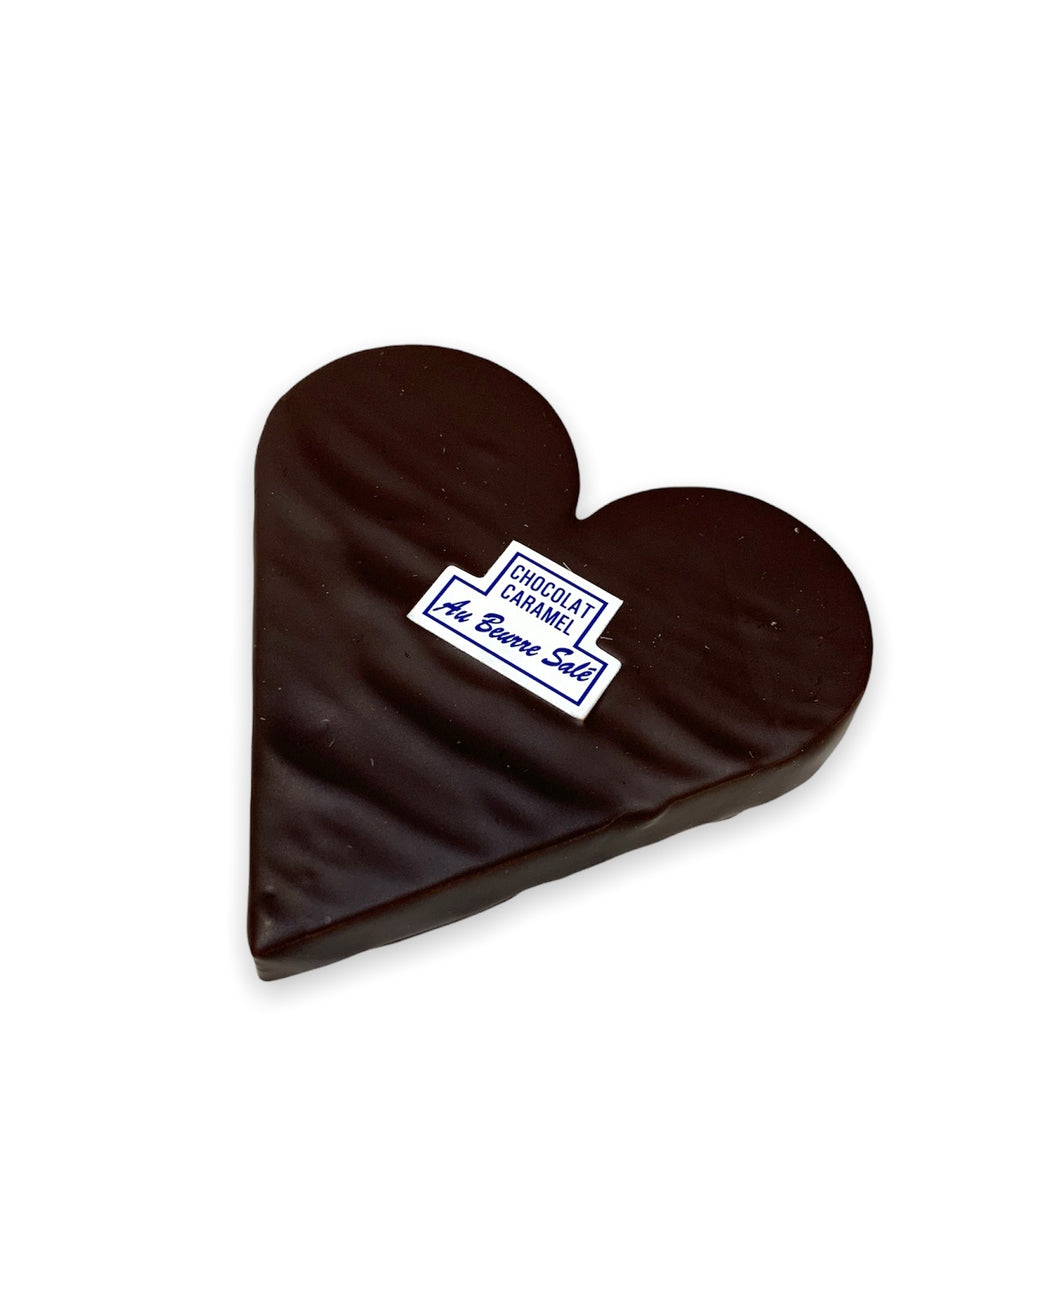 Cœur chocolat noir caramel au beurre salé 50g